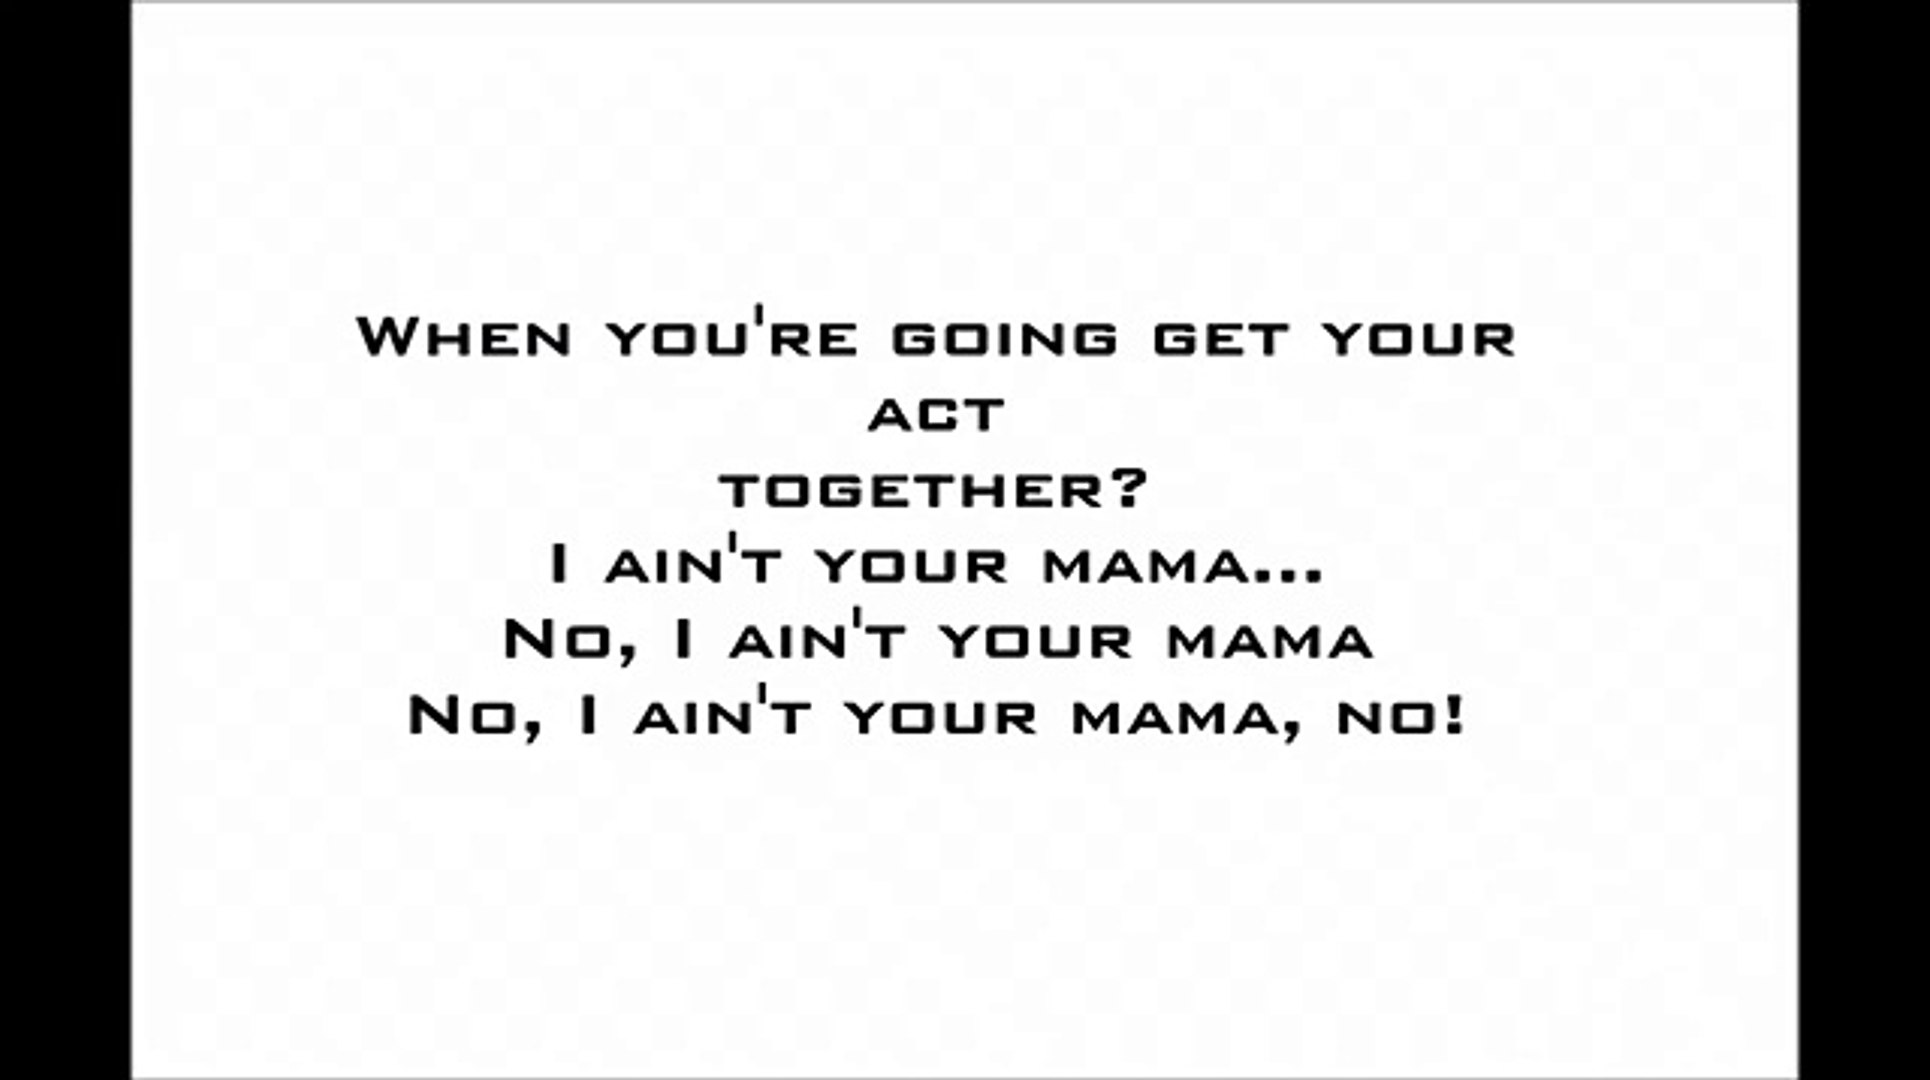 Jennifer Lopez - Ain't Your Mama (Lyrics) vevo vevo song vevo lyrics lyrics